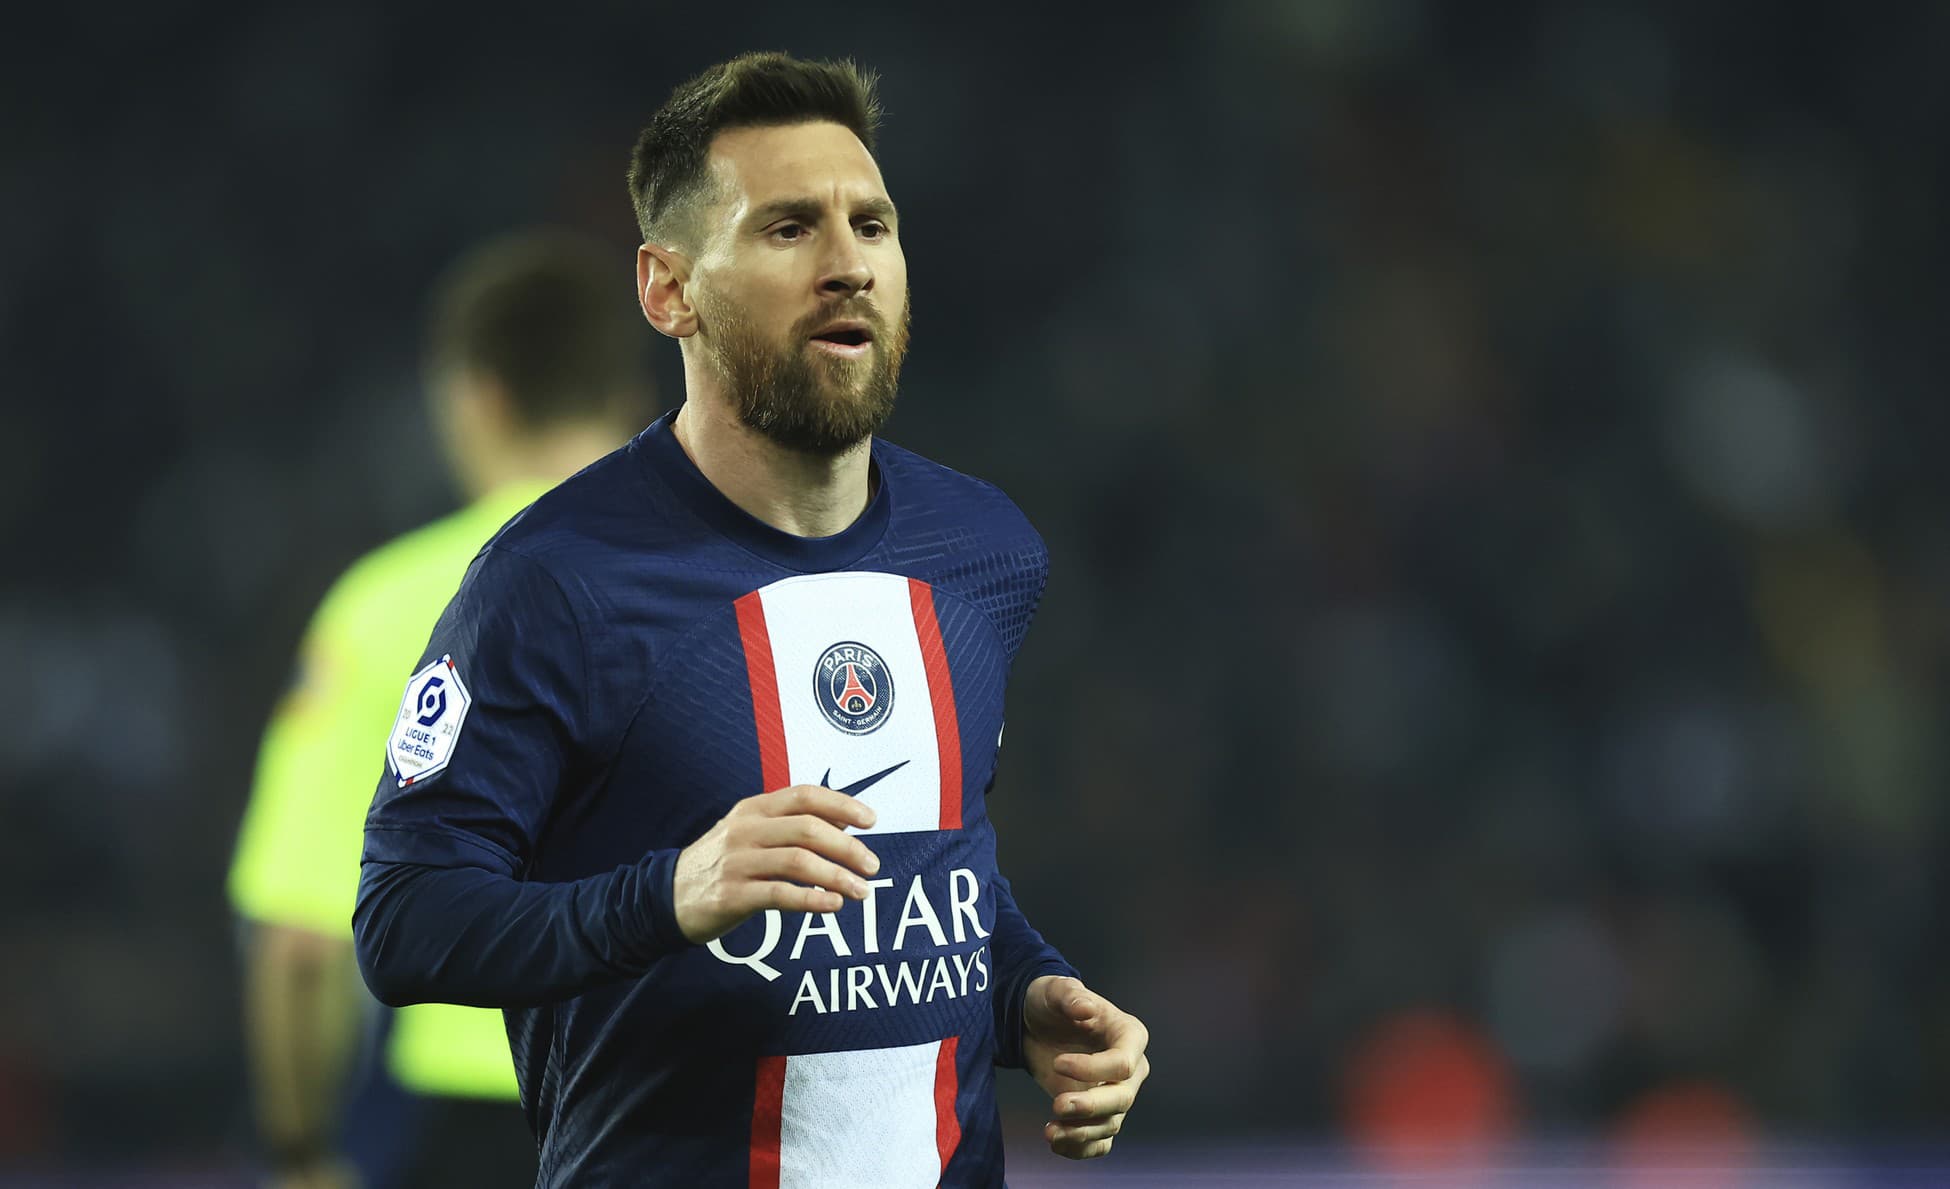 Zotrvá Messi v PSG? Musí pristúpiť na tieto podmienky